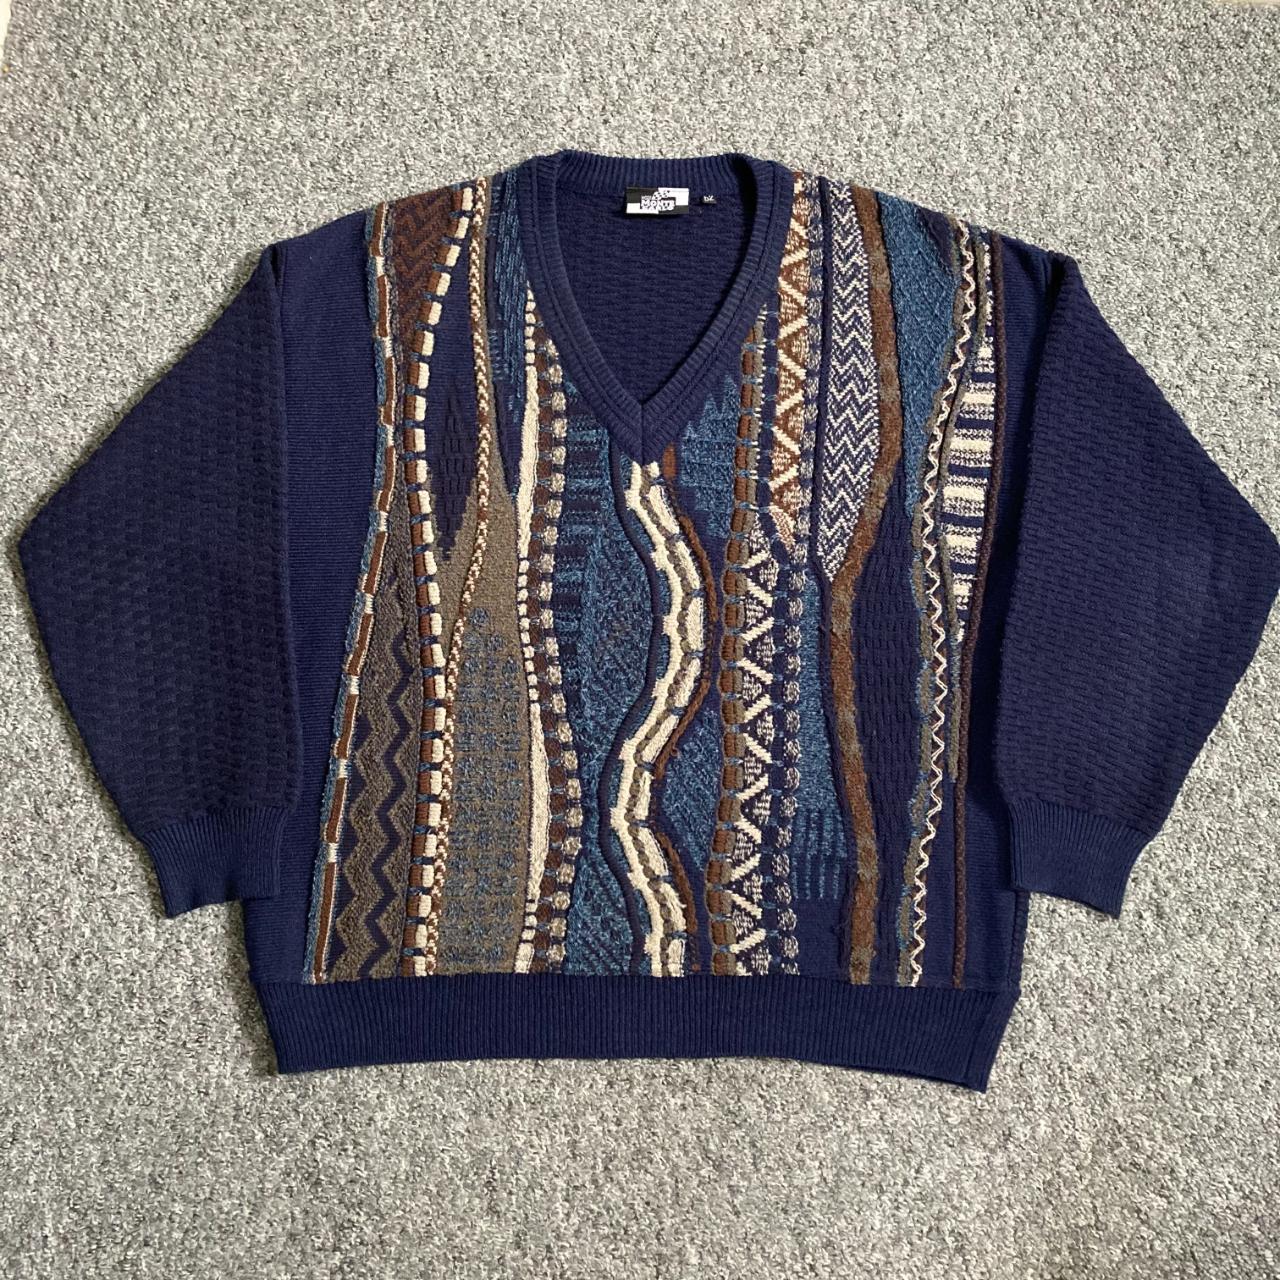 Vintage Monte Carlo Cosby Sweatshirt Pullover Jumper... - Depop